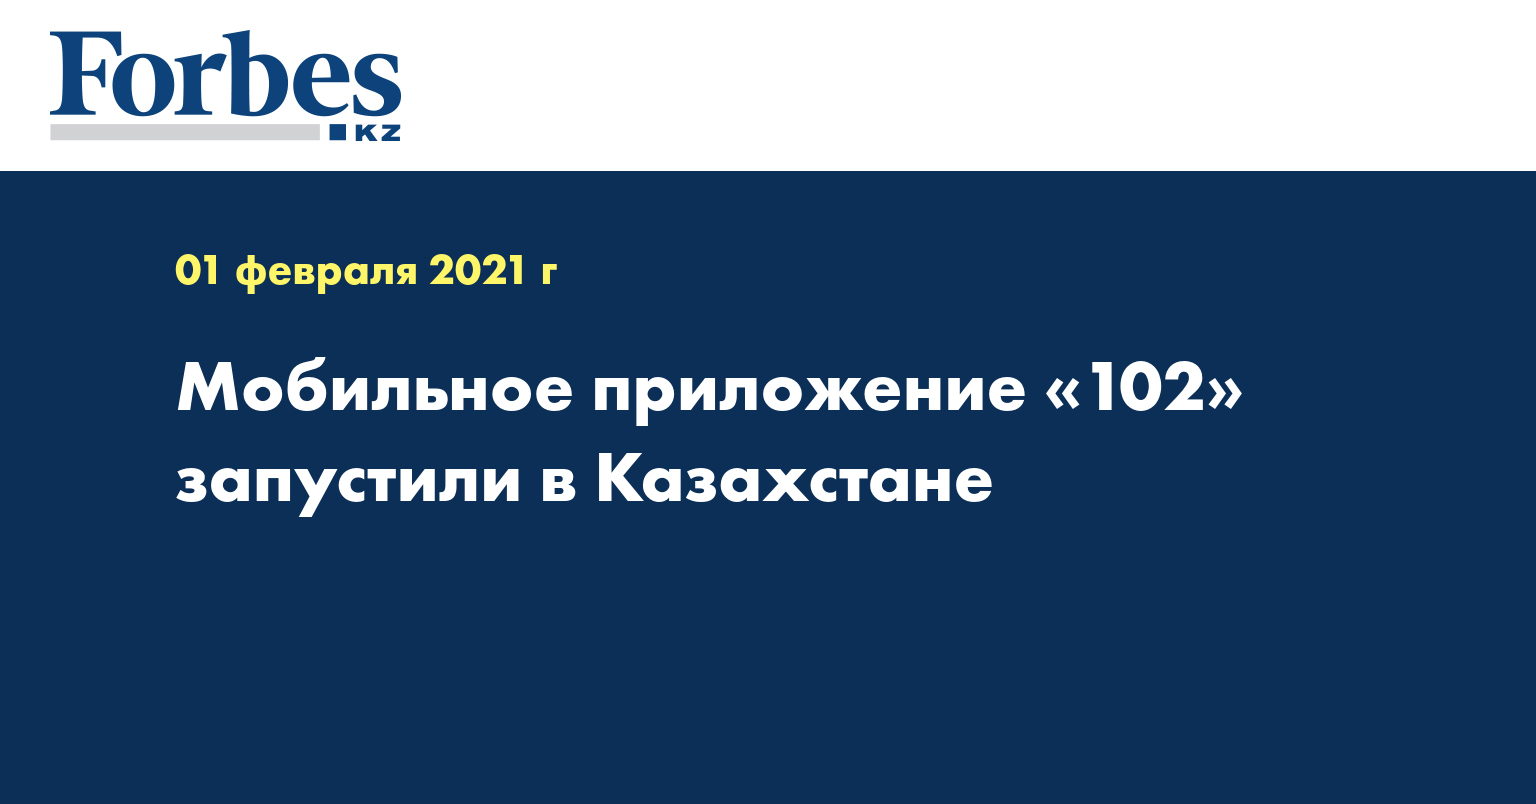 Мобильное приложение «102» запустили в Казахстане